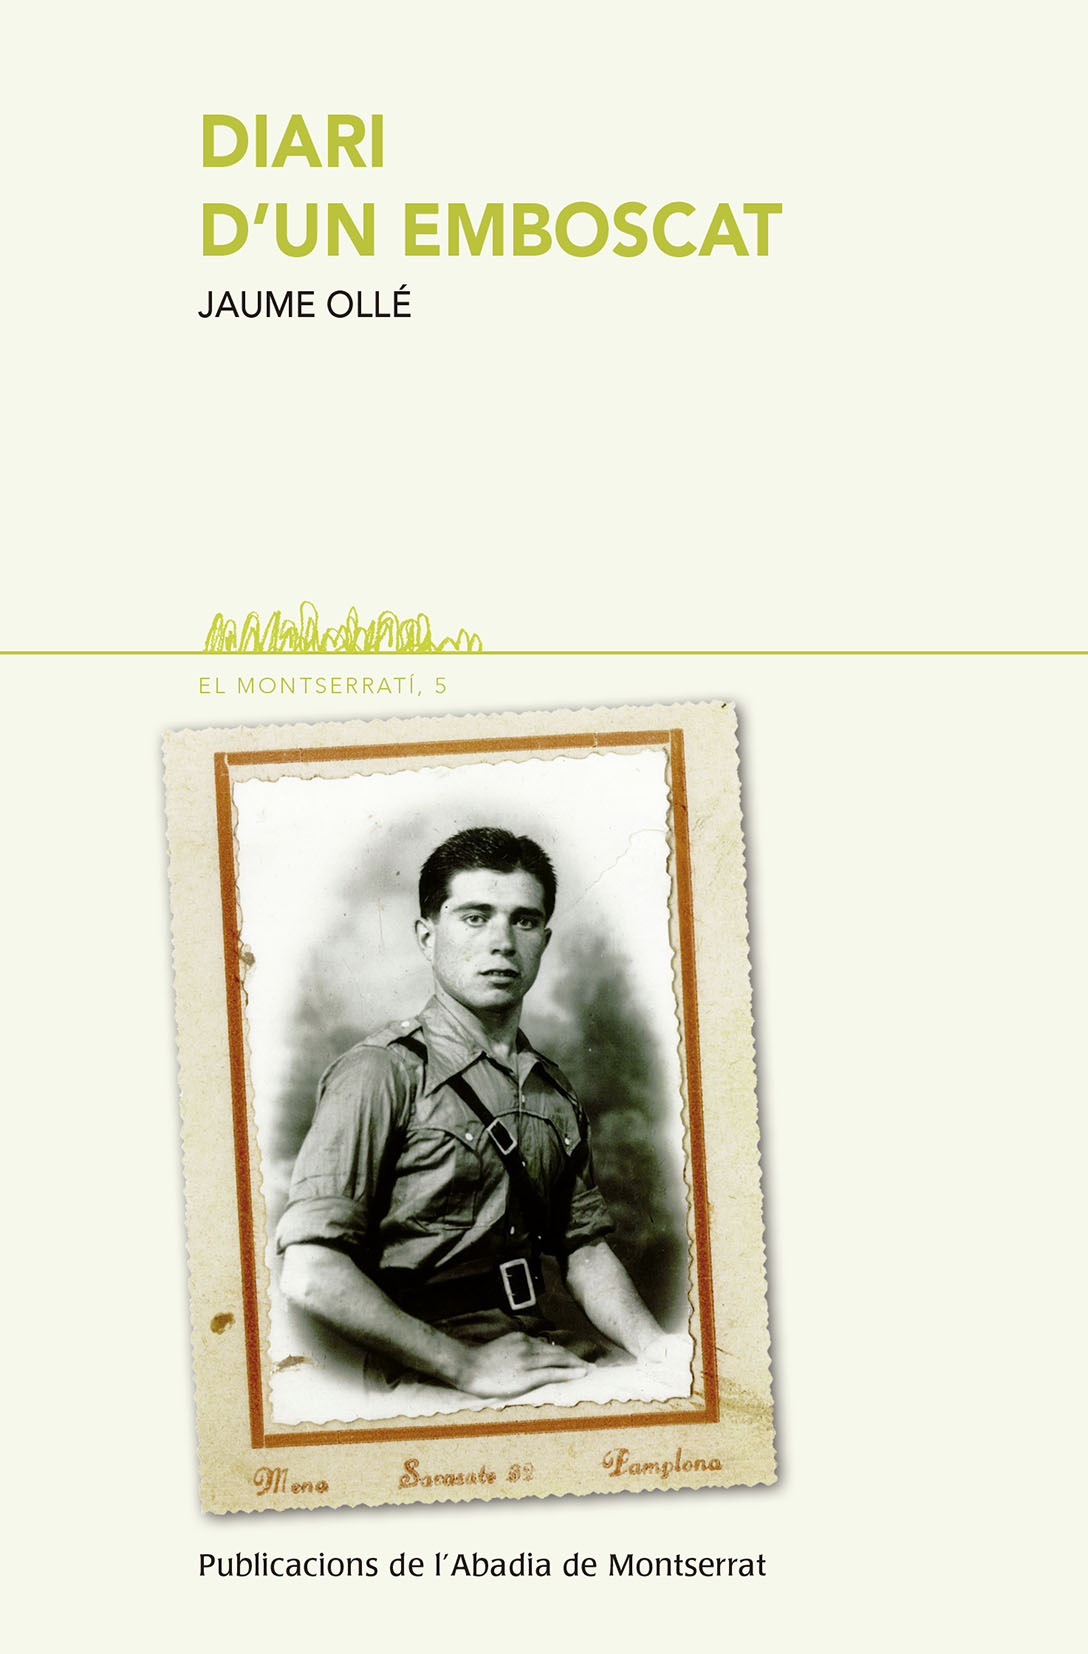 Jaume Ollé Sellés